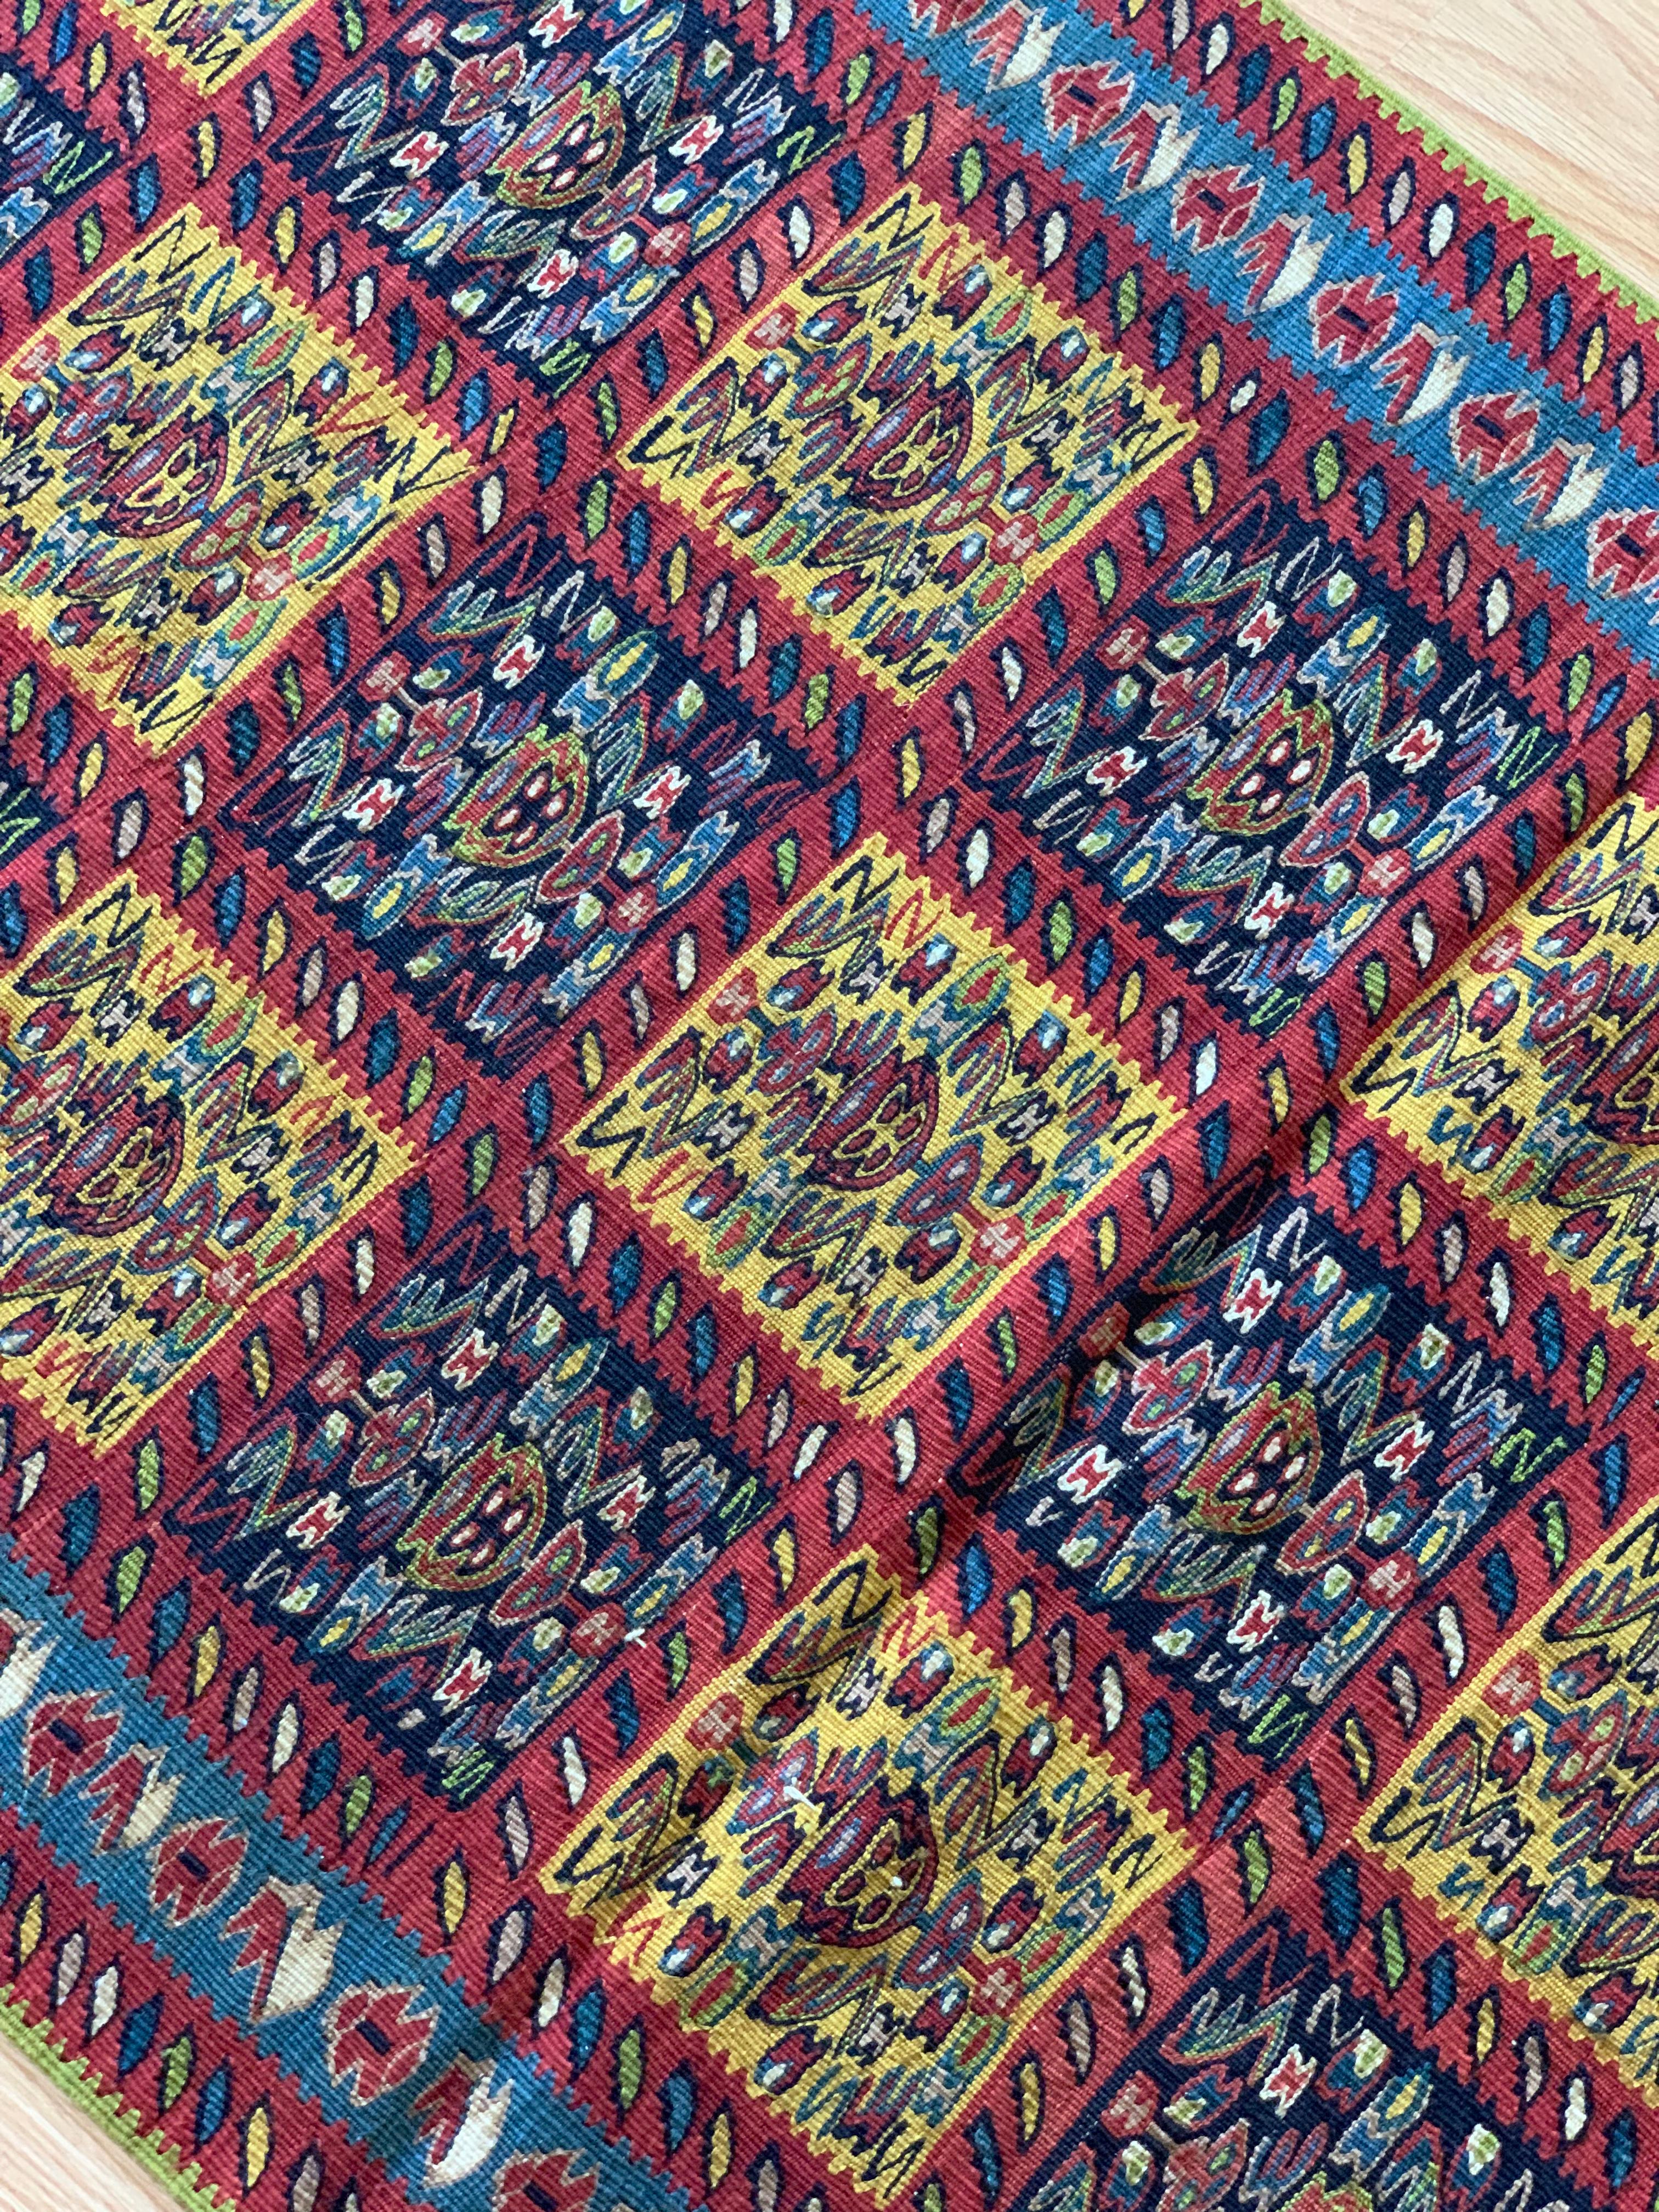 Ce magnifique tapis de couloir en pure laine est un kilim tissé à la main et à plat au début du 21e siècle, vers 2010. Elle n'a jamais été utilisée et est donc en excellent état. Le motif central a été tissé sur un fond rouge rouille et présente un